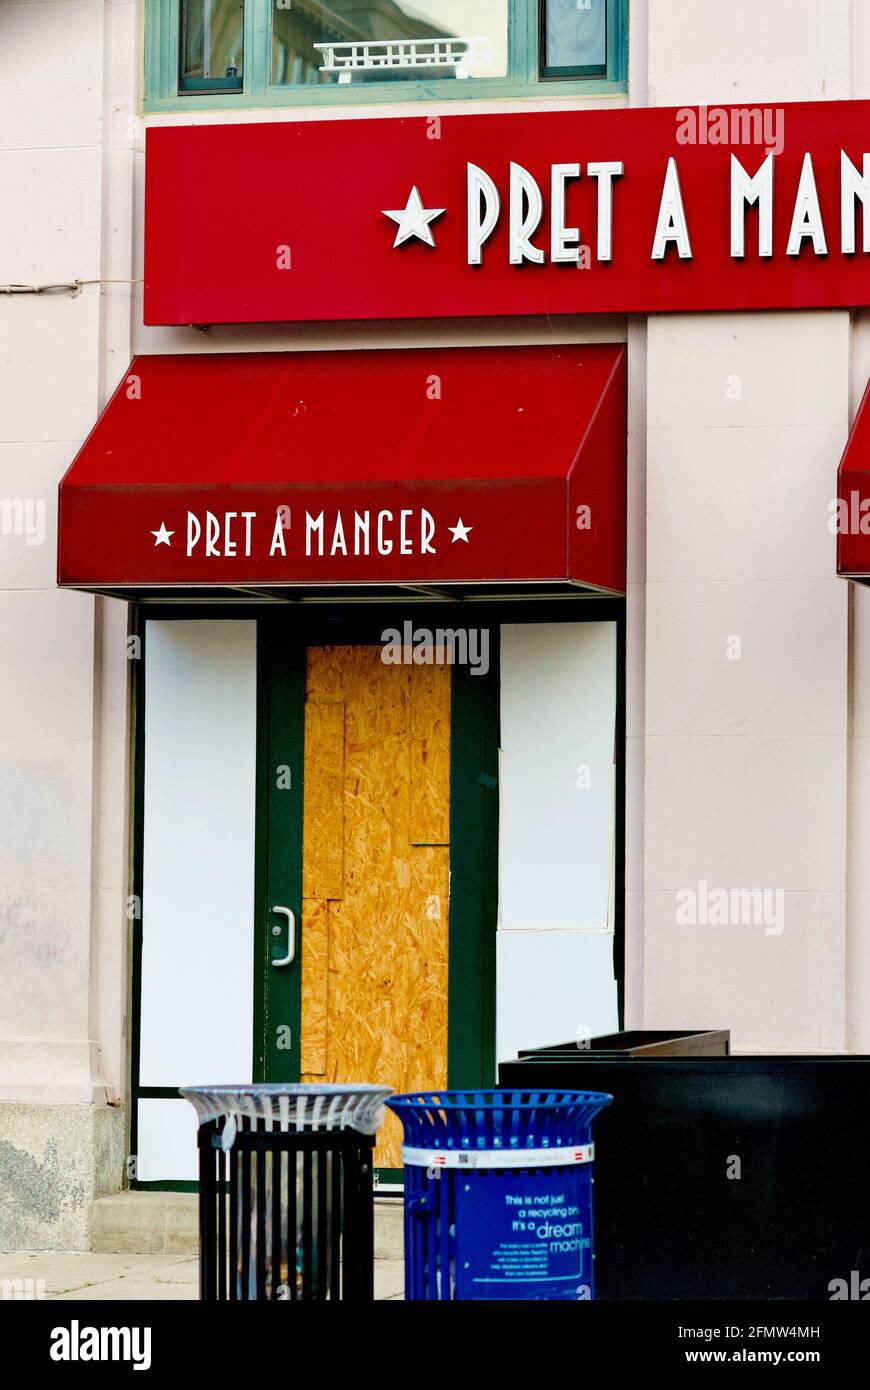 Washington, D.C., USA - 3. November 2020: Ein Restaurant in Pret a Manger befindet sich in der Nähe des Weißen Hauses und erwartet die Gewalt am Wahltag. Stockfoto